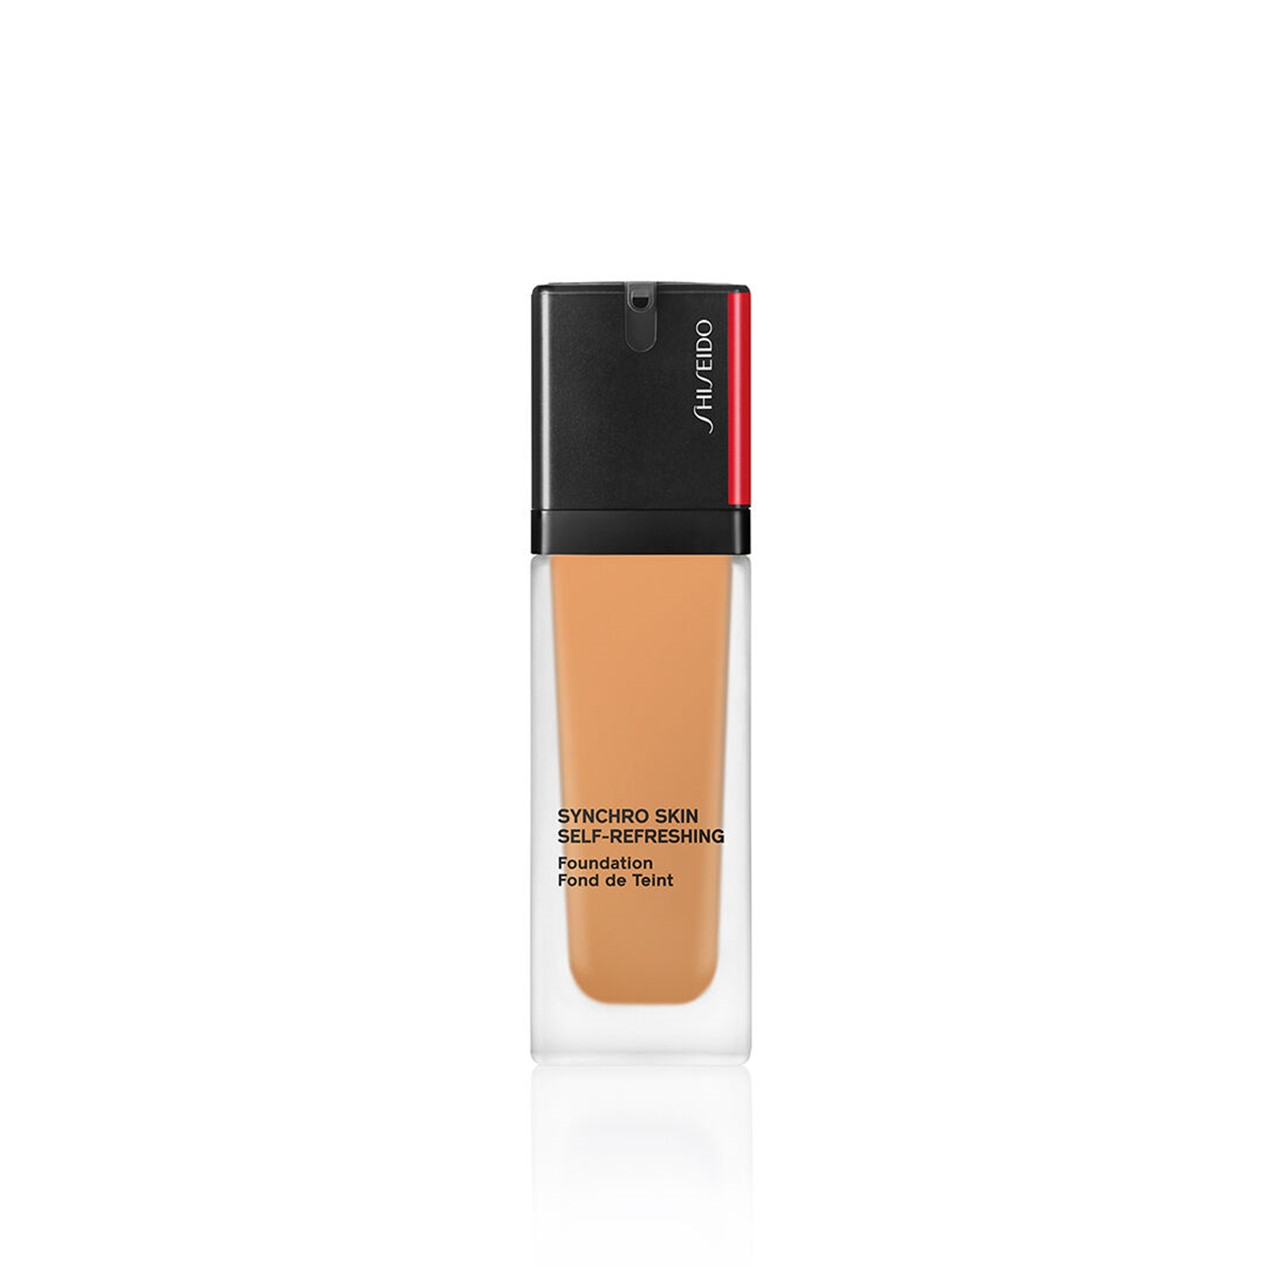 Shiseido Synchro Skin Self-Refreshing Foundation SPF30 410 Sunstone 30ml (1.01fl oz)